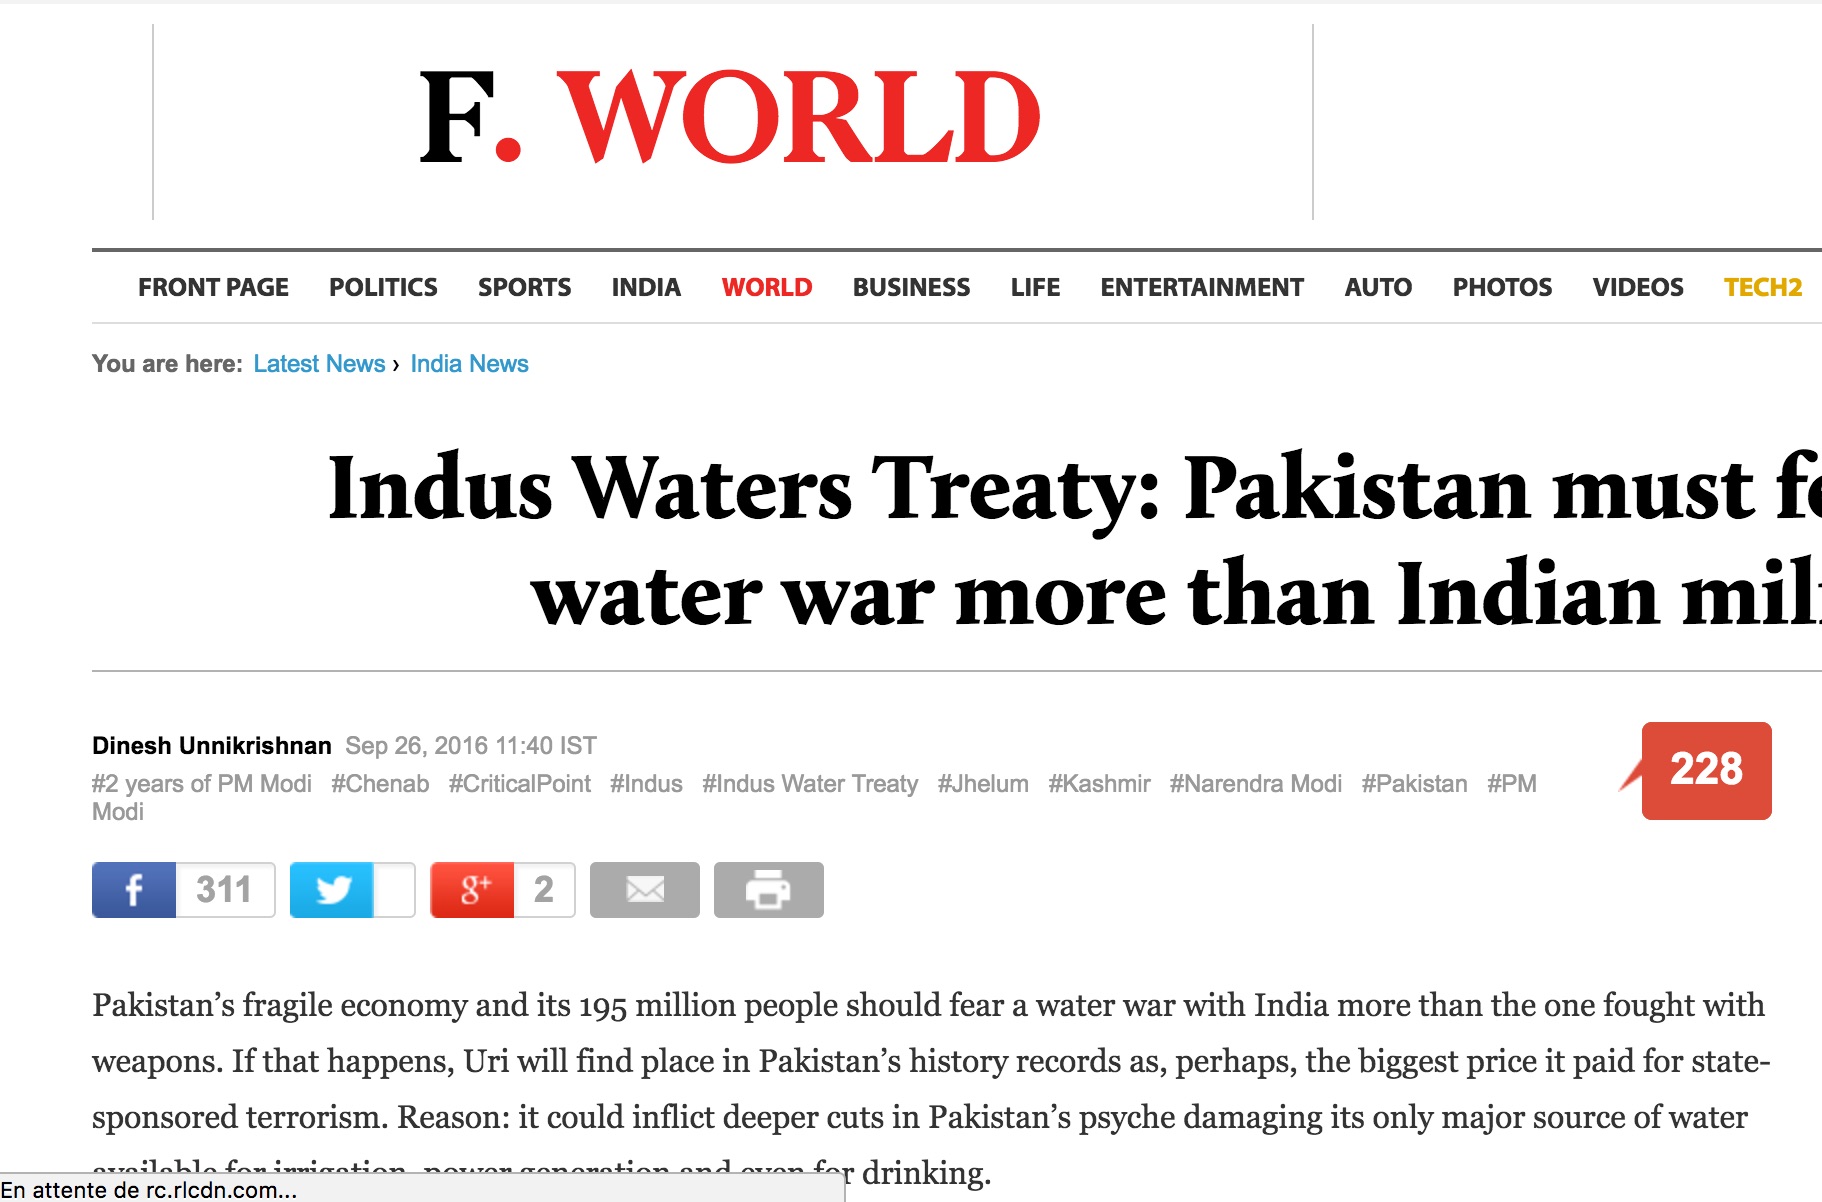 Couper l'eau de l'Indus au Pakistan entraînerait une crise majeure au Pakistan, totalement dépendant de cette ressource. Copie d'écran du Firstpost, le 27 septembre 2016.